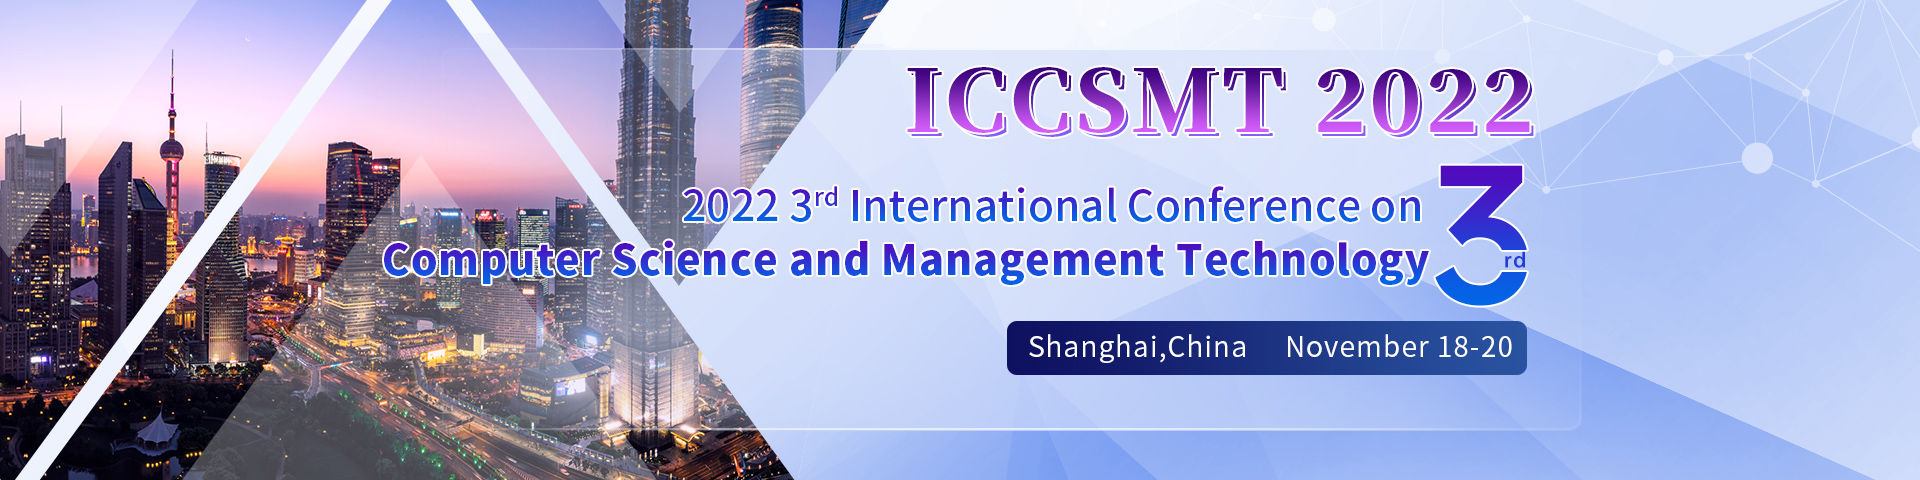 11月上海-ICCSMT2022-会议官网英文-尹旭舟20220331.jpg